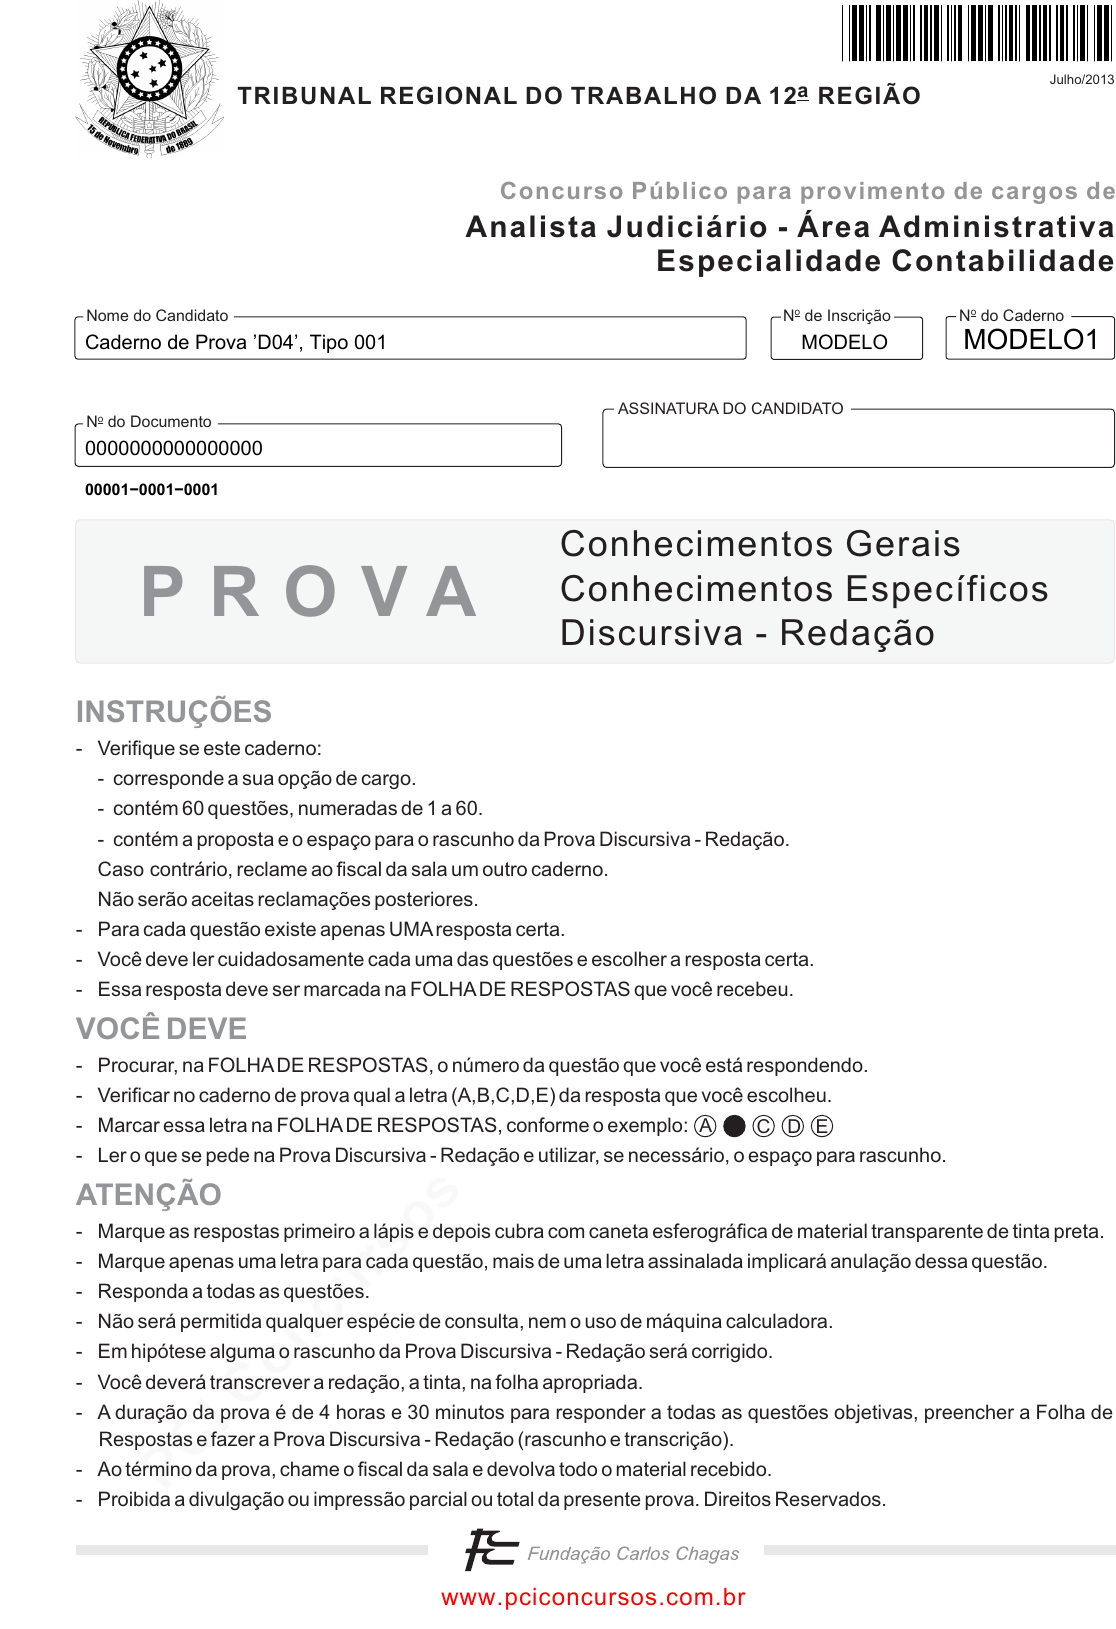 RTC em português  on X: ⚠️: O Roblox está passando por problemas em  diversas áreas. Já foi informado no  que os  funcionários estão cientes e investigando o problema.   /